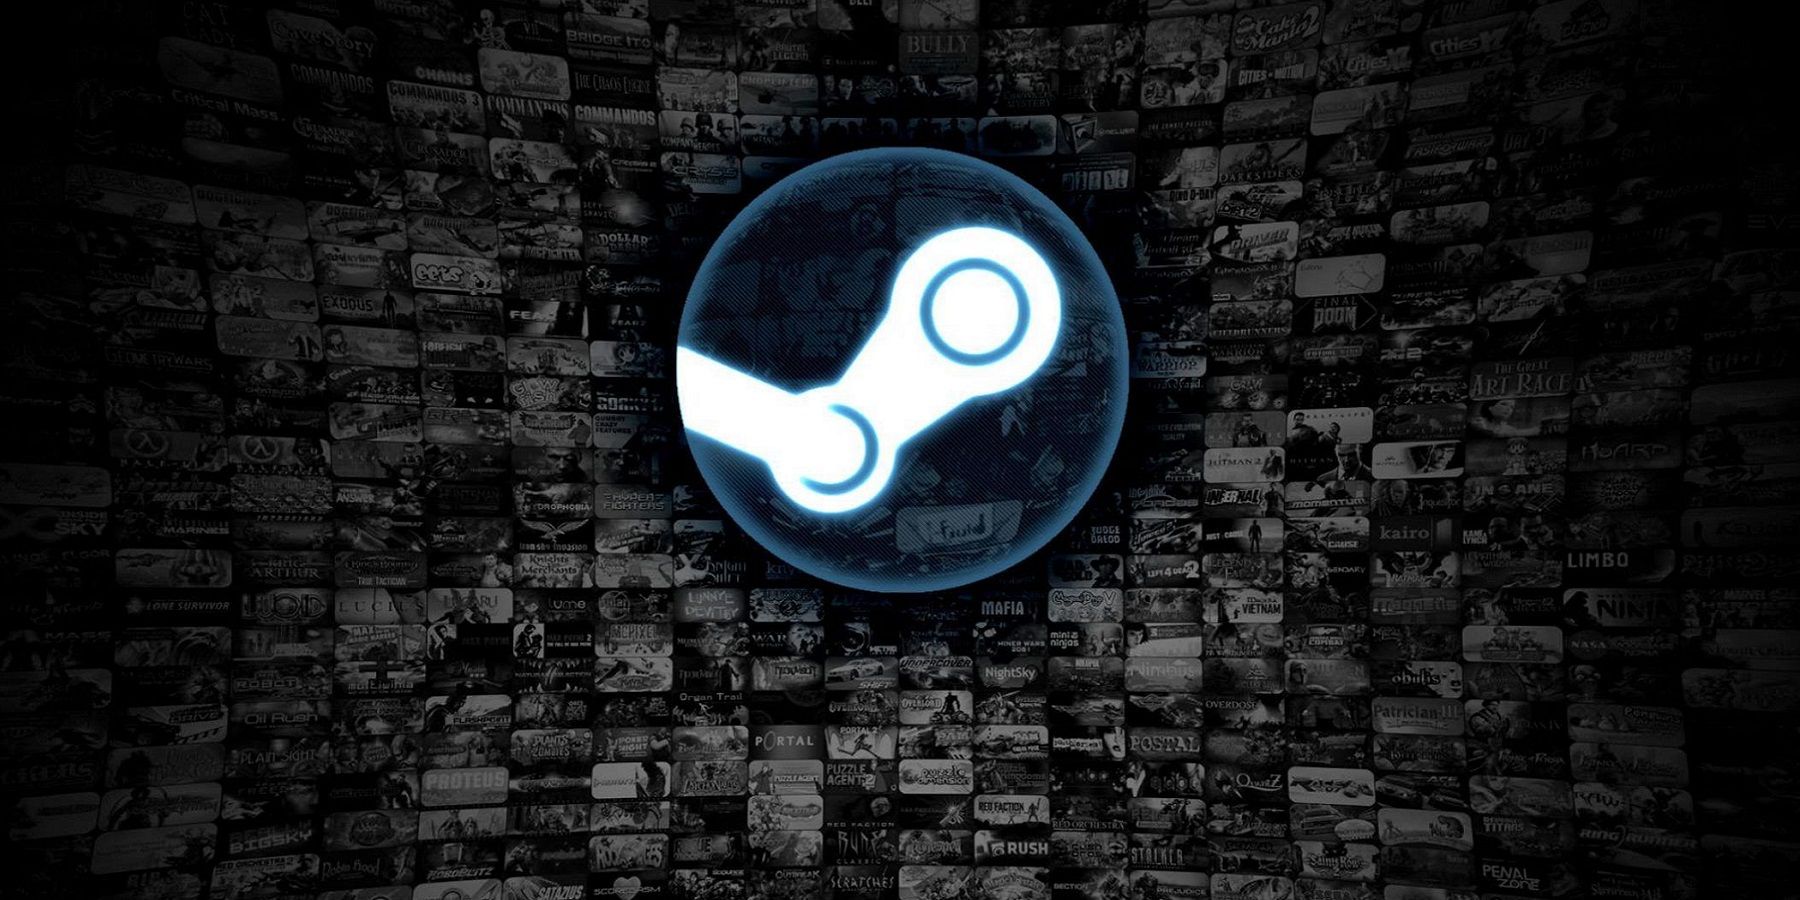 Логотип Steam на фоне черно-белого коллажа из экранов видеоигр.